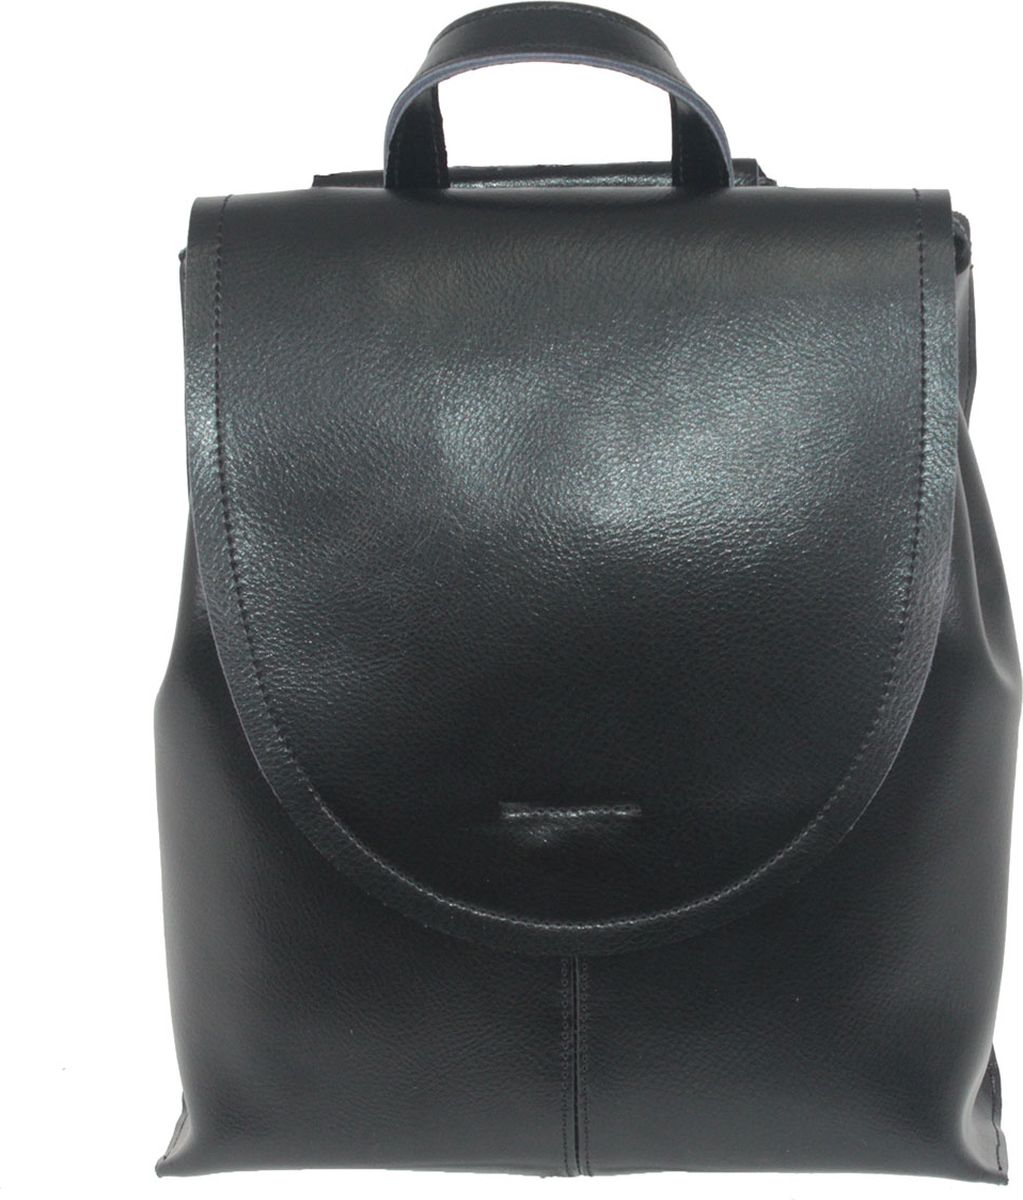 Рюкзак женский Flioraj, цвет: черный. 2606-220 black